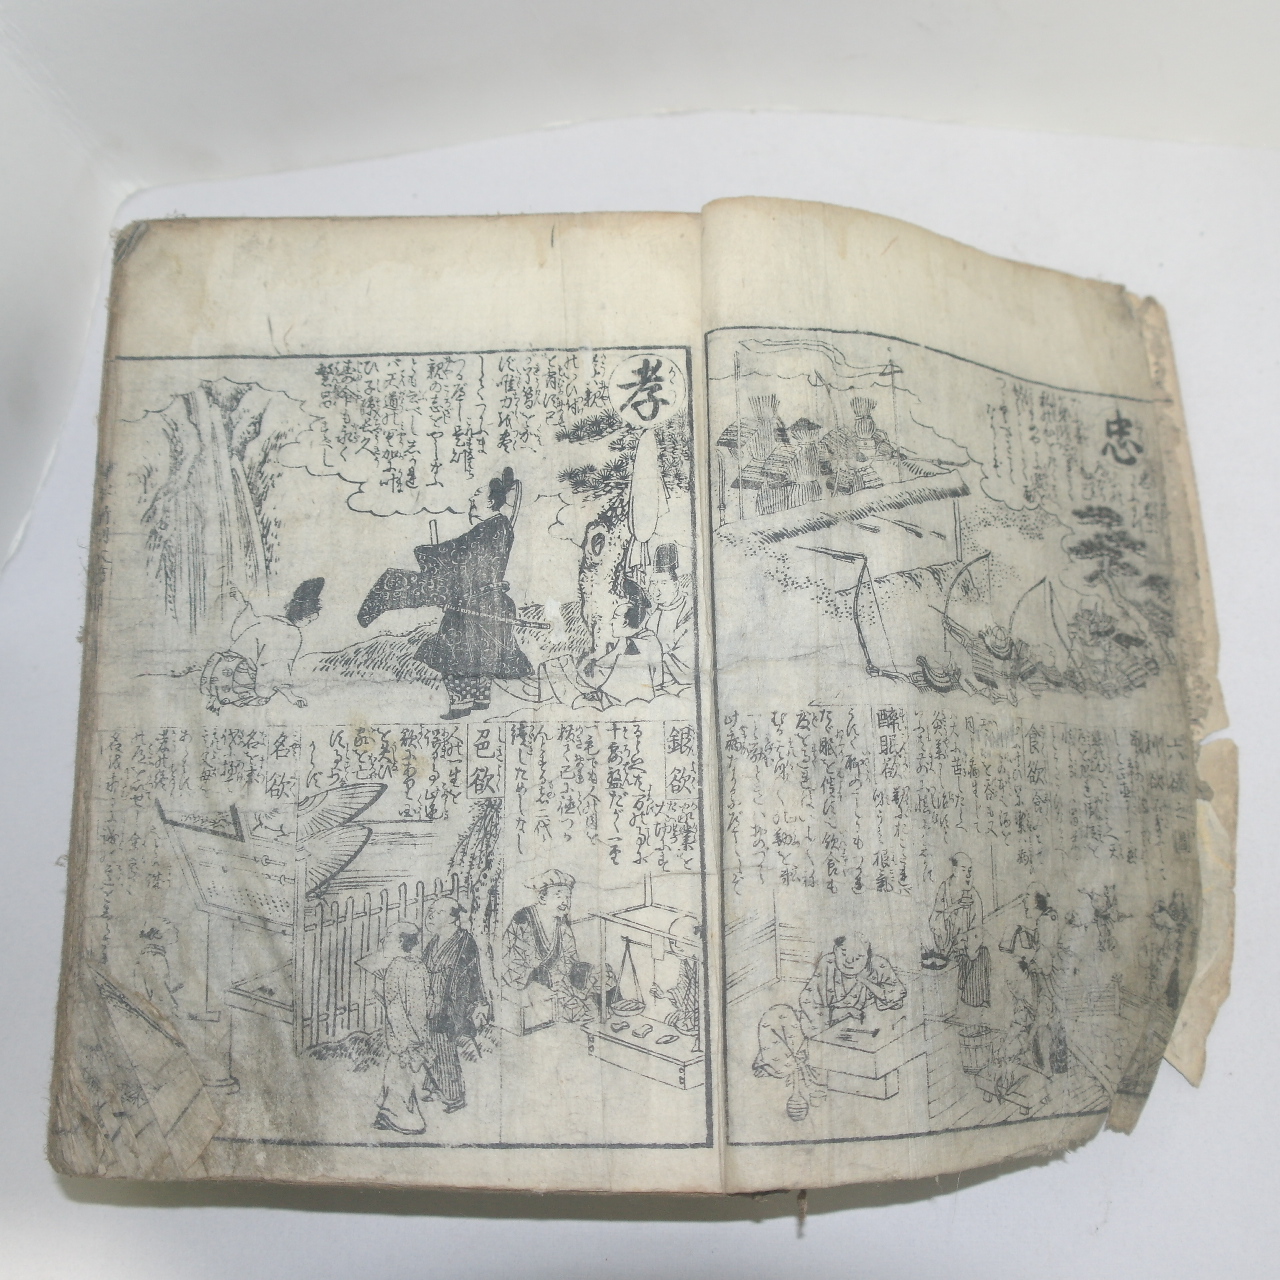 1797년(寬政9年) 일본목판본 증자신각대절용(增字新刻大節用) 1책완질